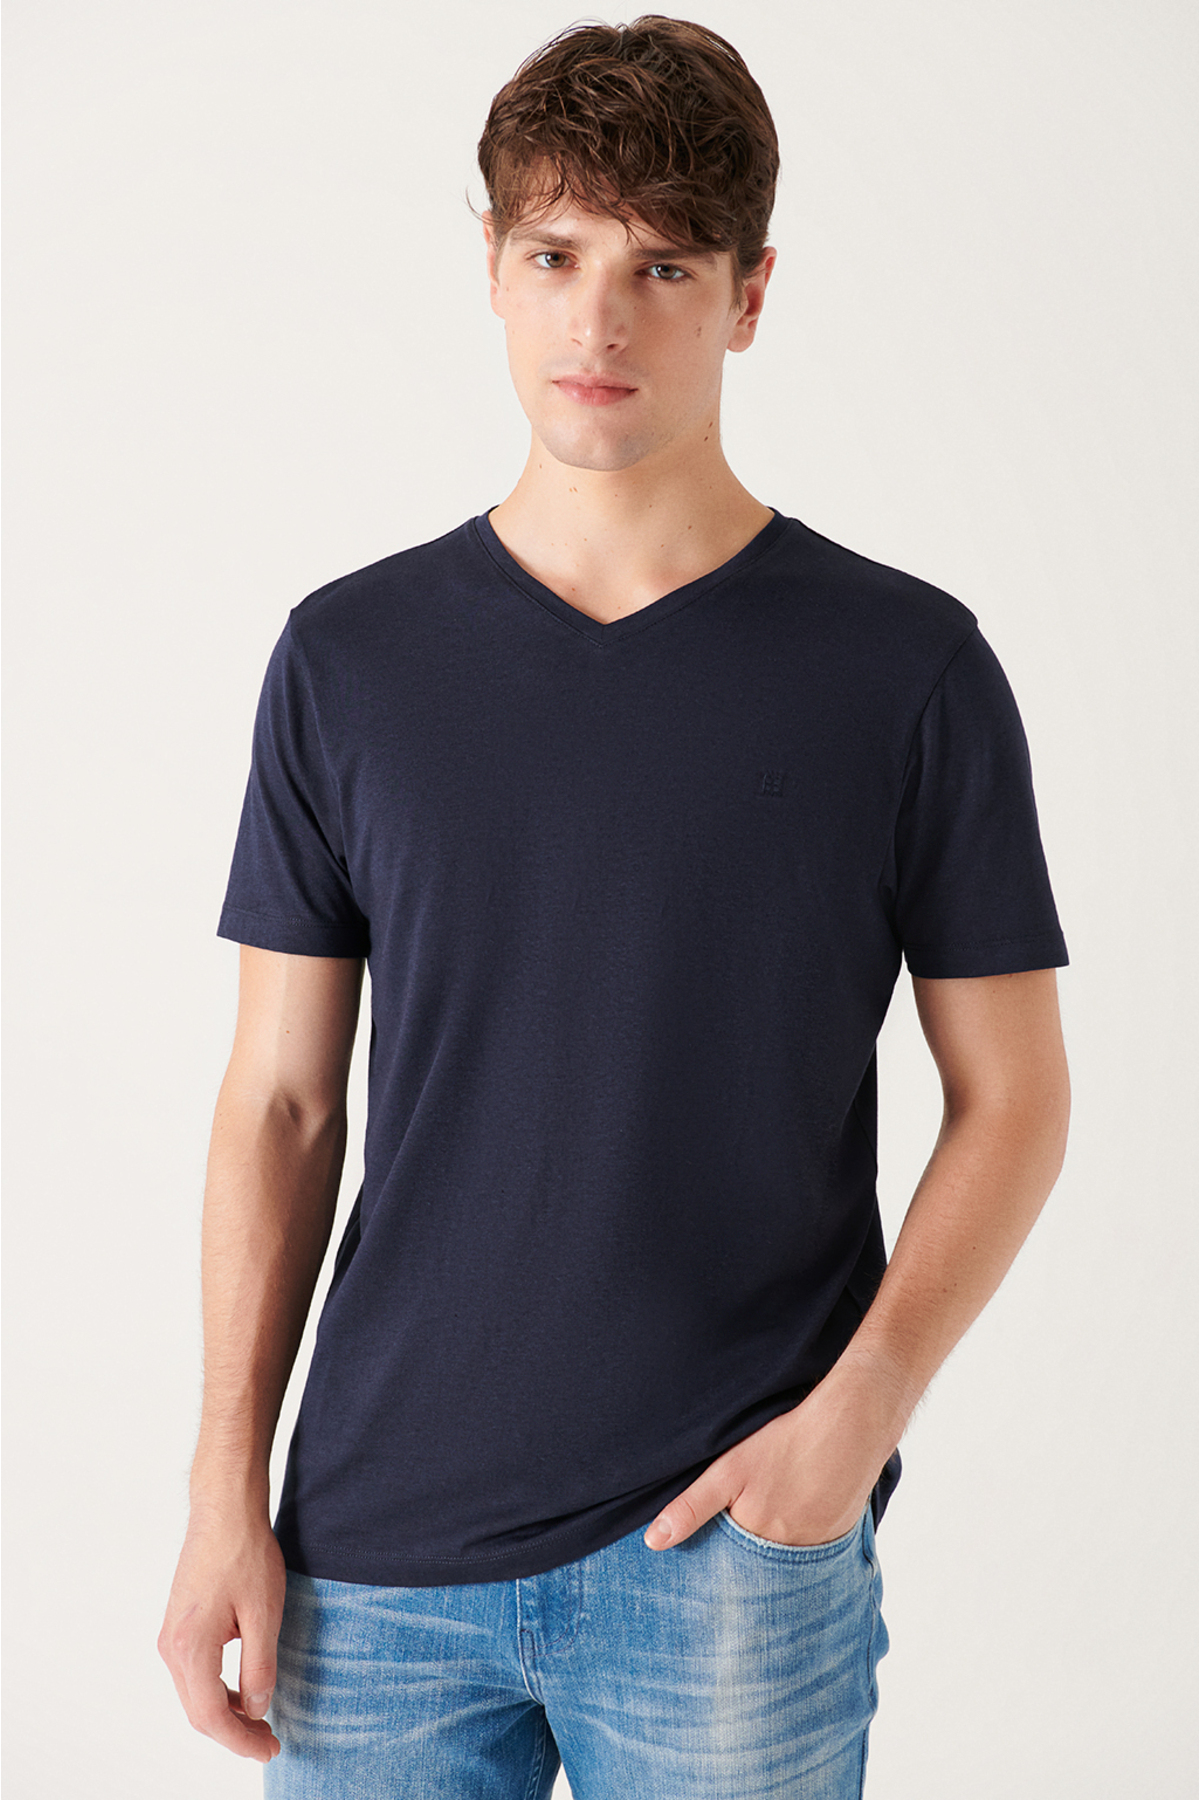 Avva Men's Navy Blue Ultrasoft V Neck Modal Slim Fit Slim Fit T-shirt